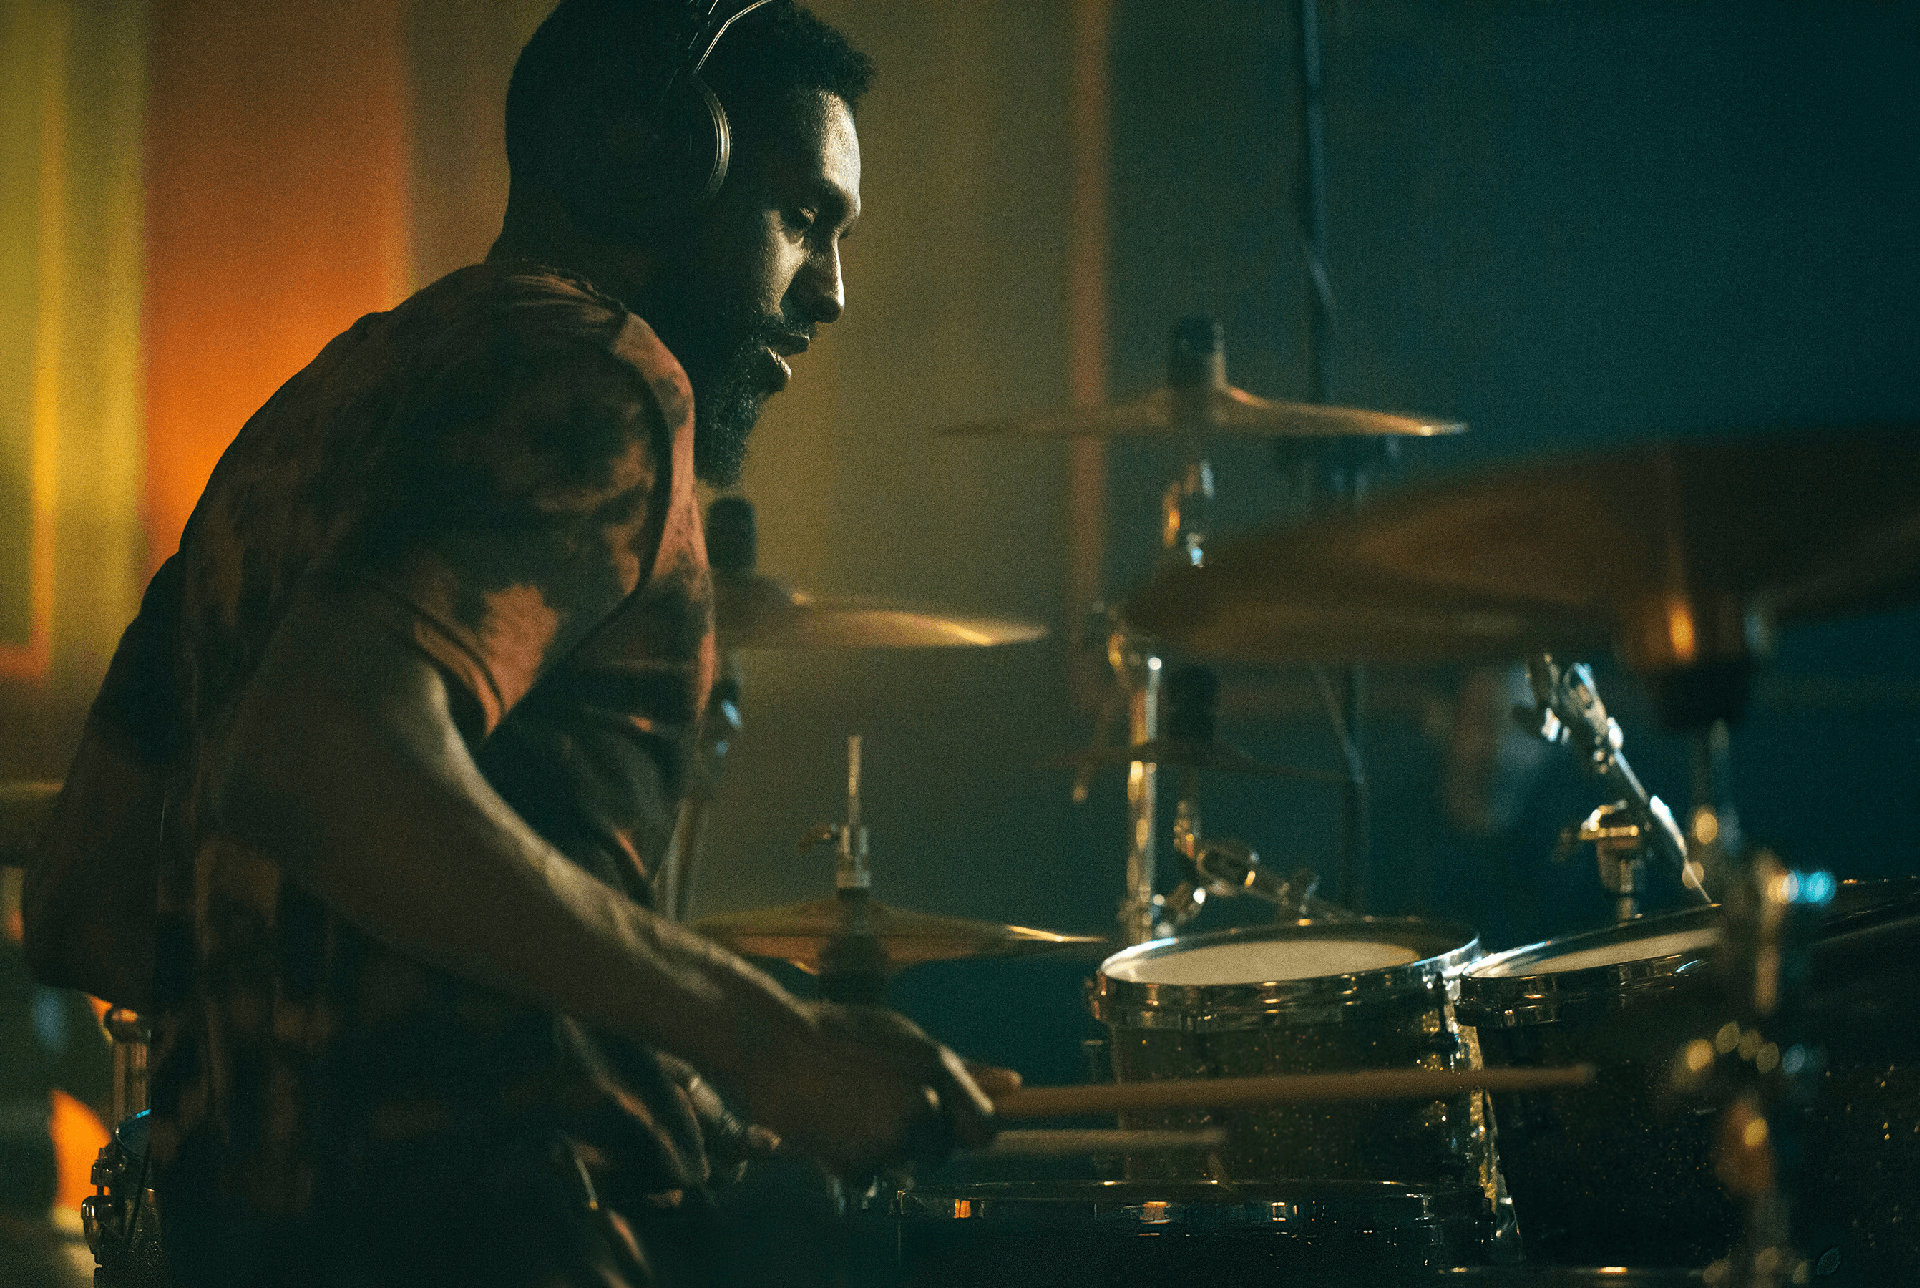 drummer_1